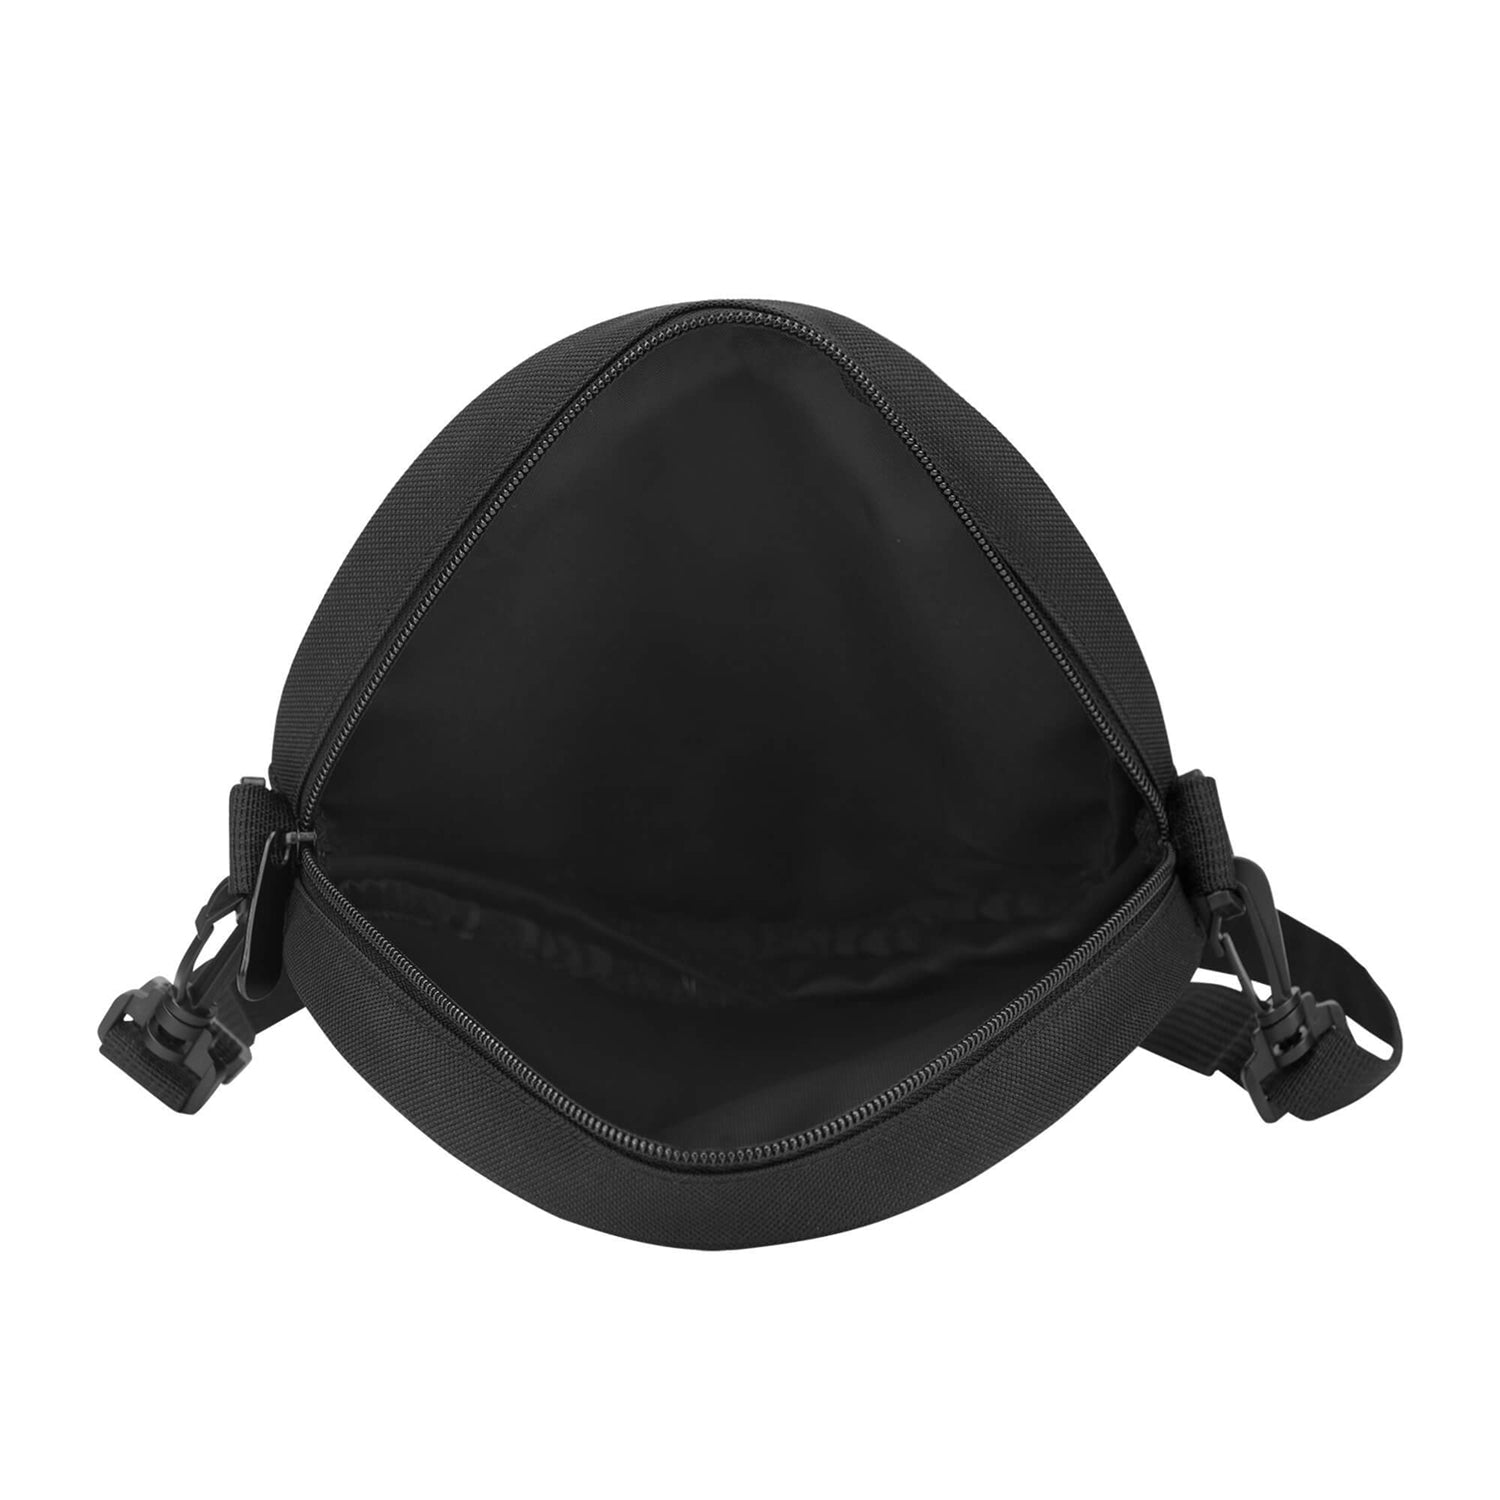 donachie-tartan-round-satchel-bags